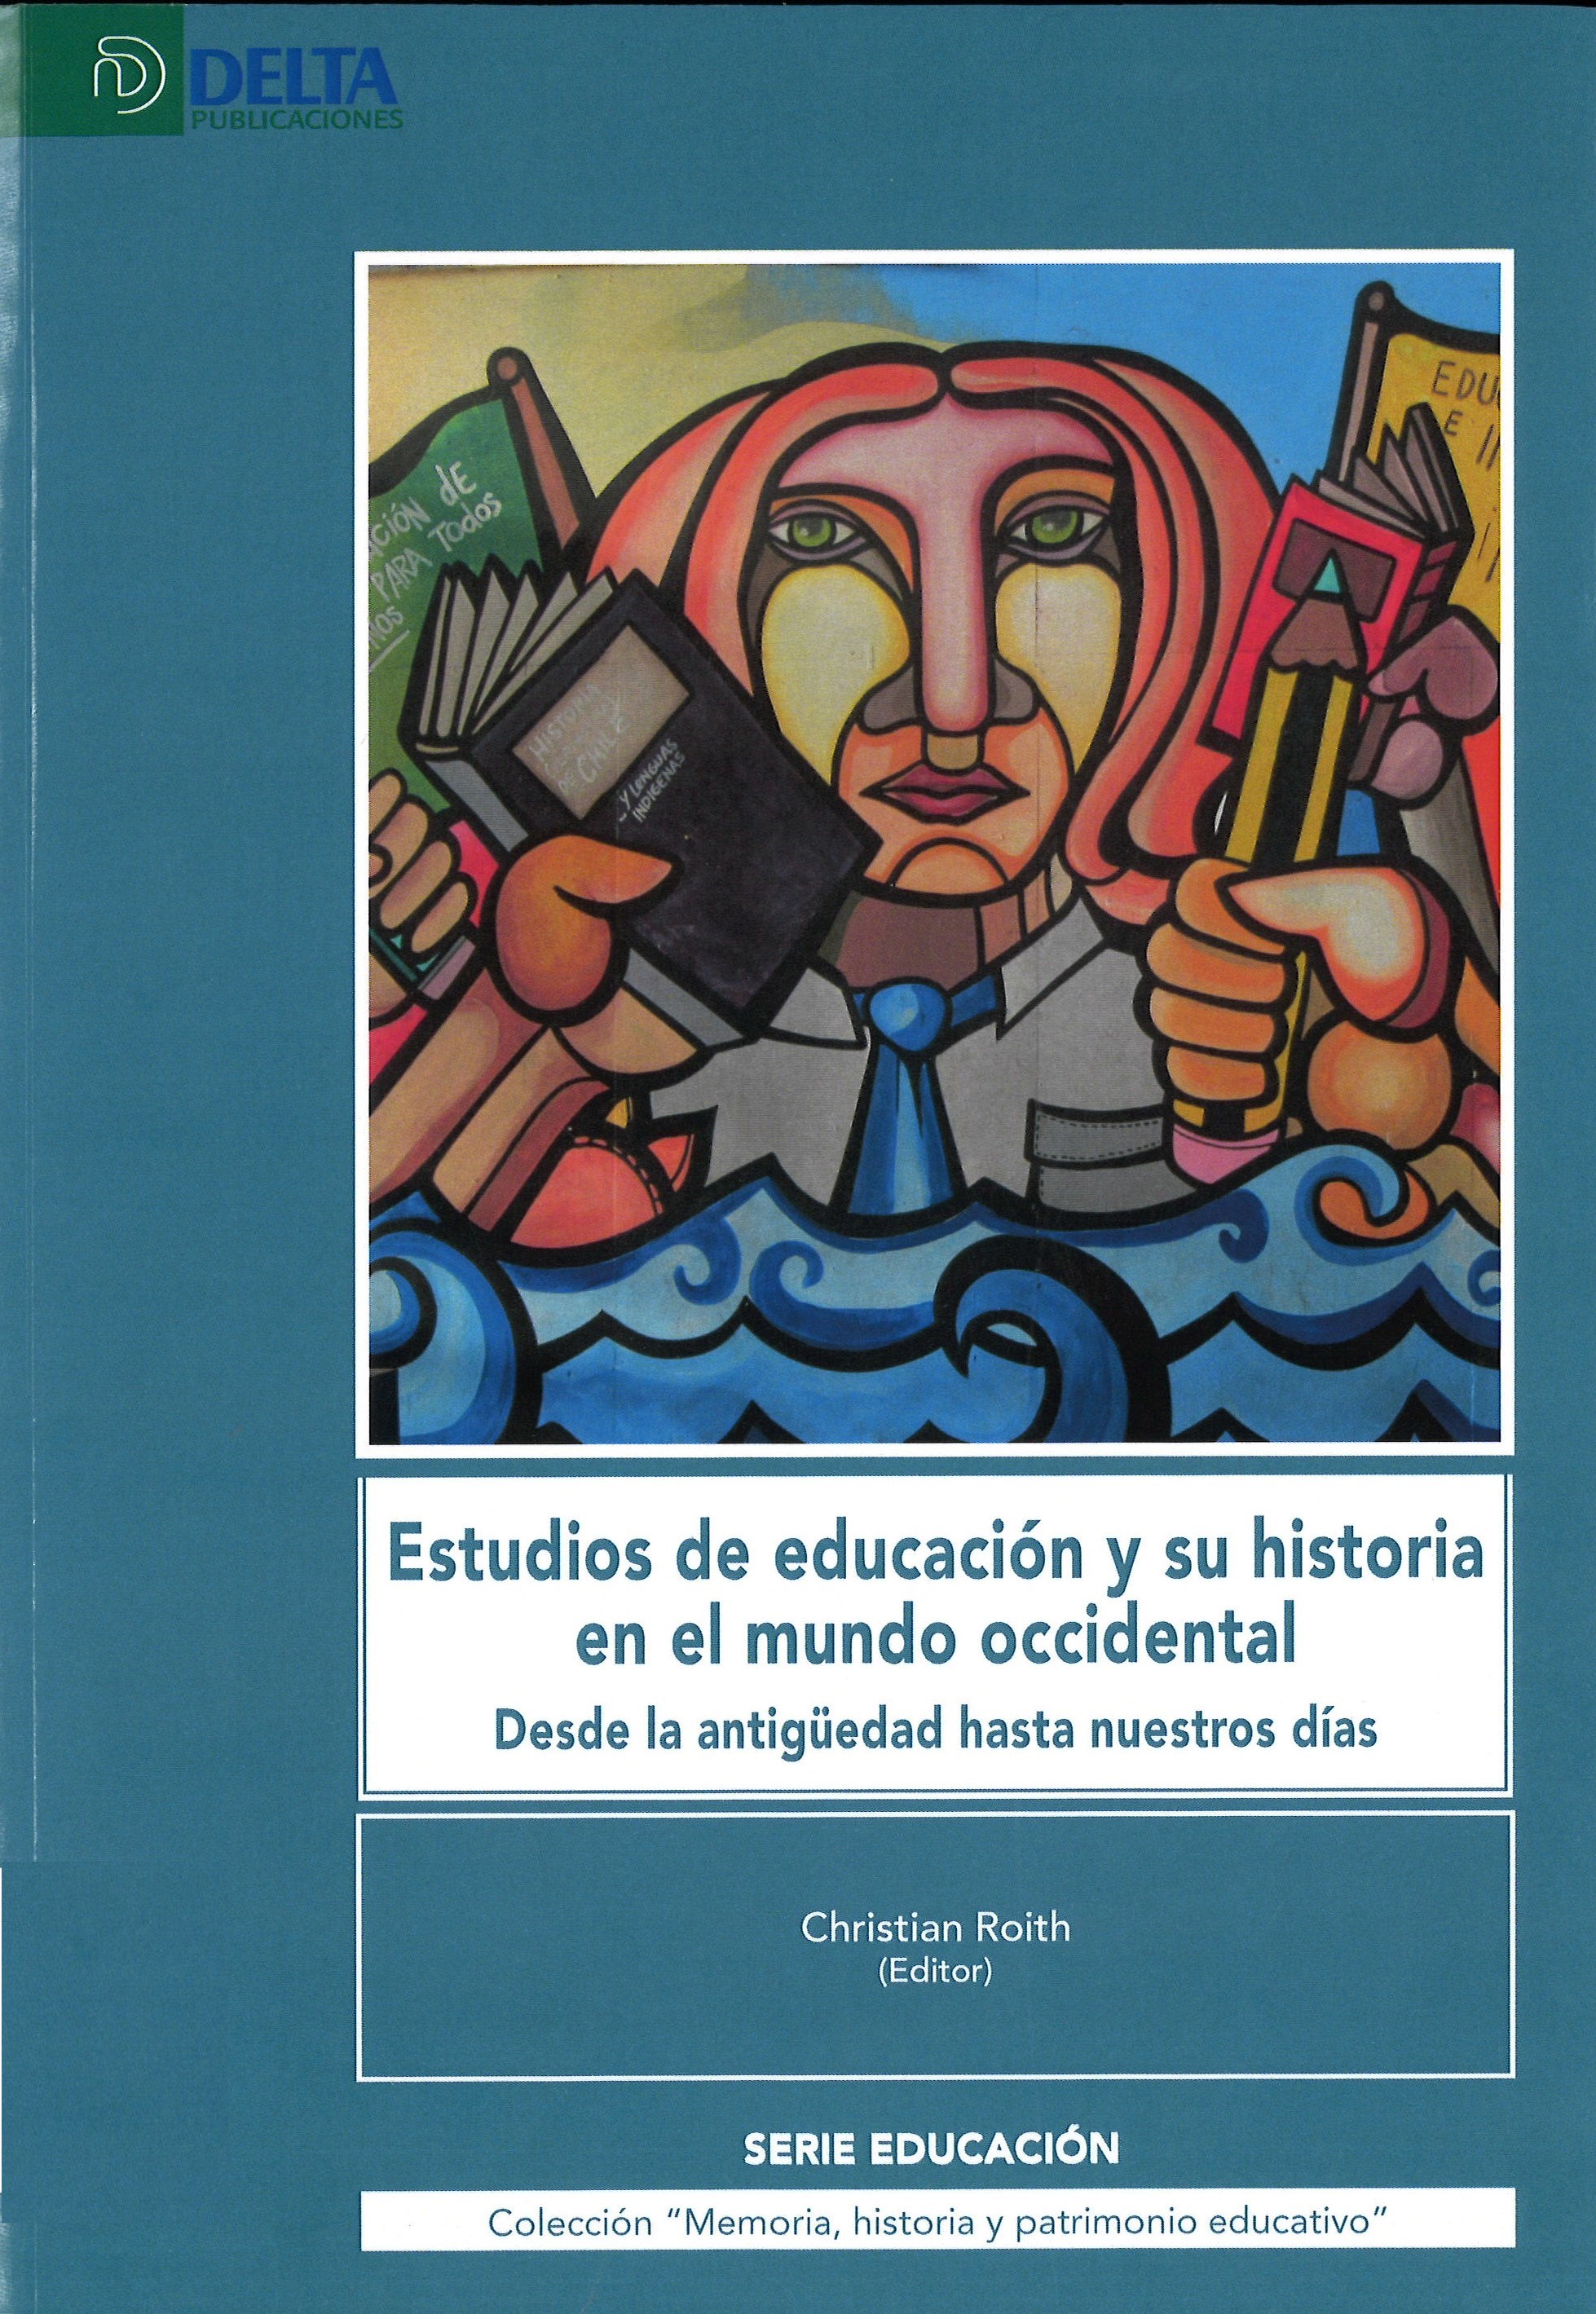 Imagen de portada del libro Estudios de educación y su historia en el mundo occidental